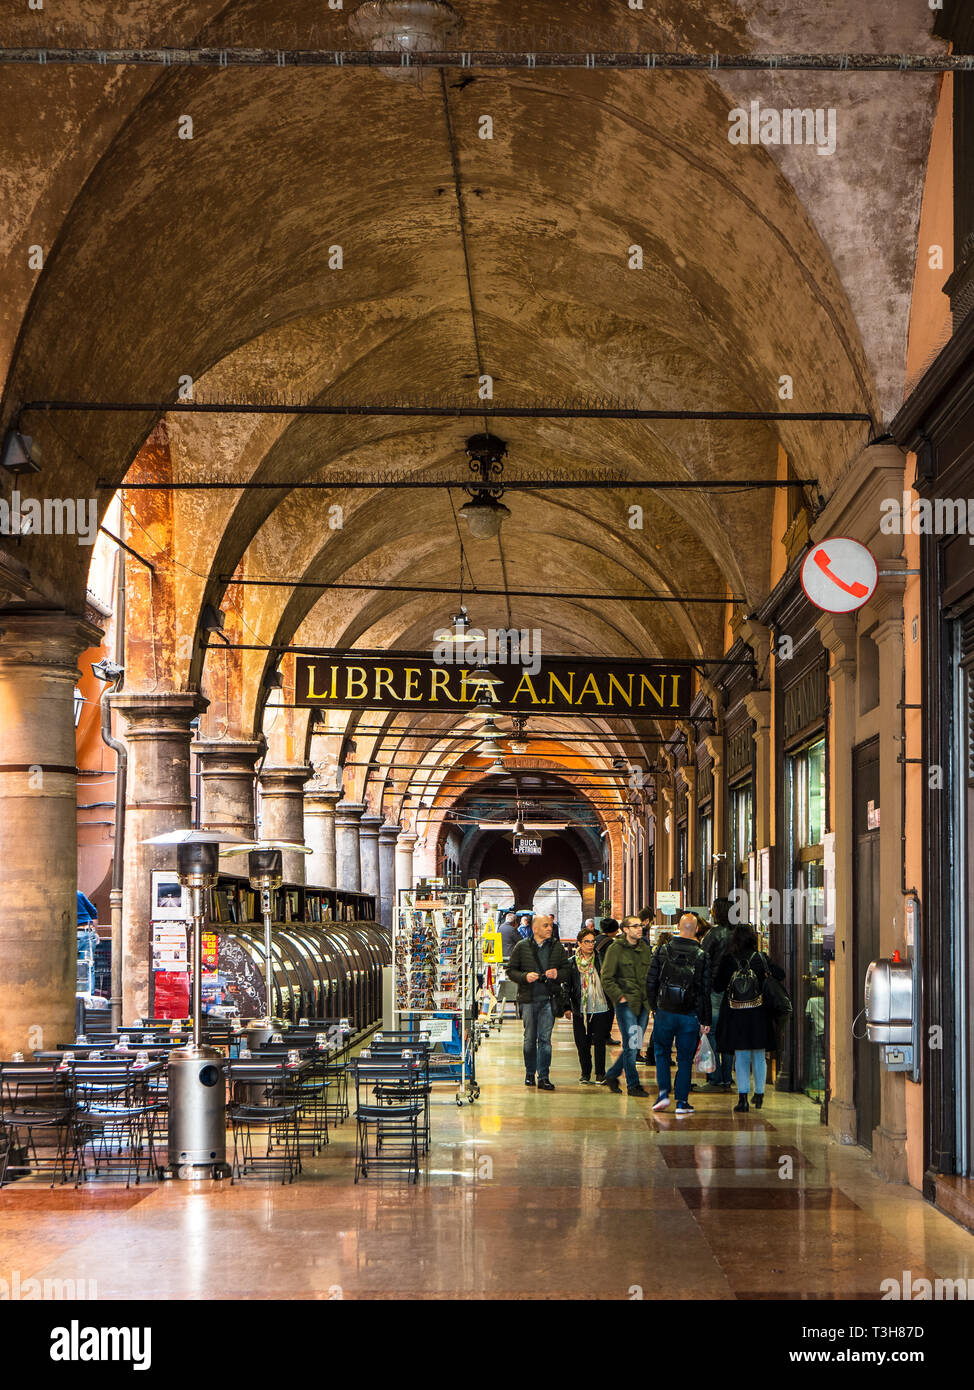 Galleria Cavour una galleria commerciale nel centro medioevale di Bologna con il bookshop Libreria Nanni Foto Stock